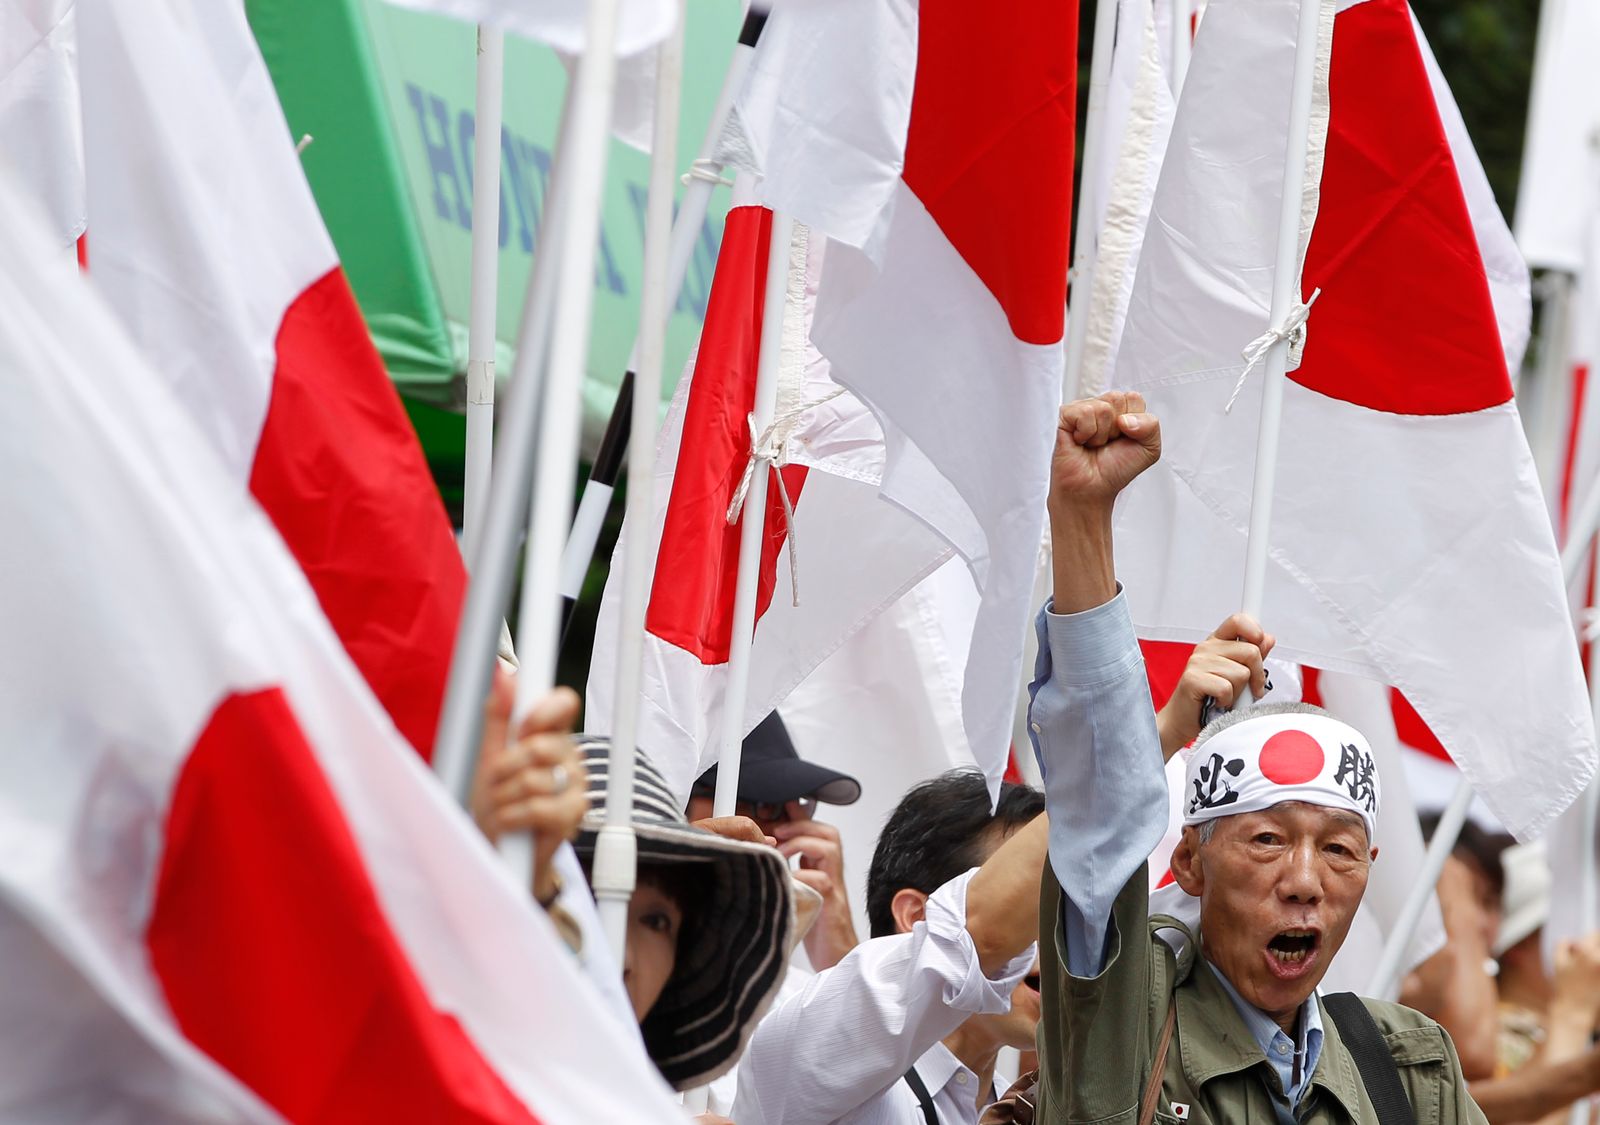 يرفع قبضته خلال تظاهرة لقوميين يابانيين في طوكيو، احتجاجاً على زيارة الرئيس الكوري الجنوبي السابق لي ميونغ باك جزيرة 